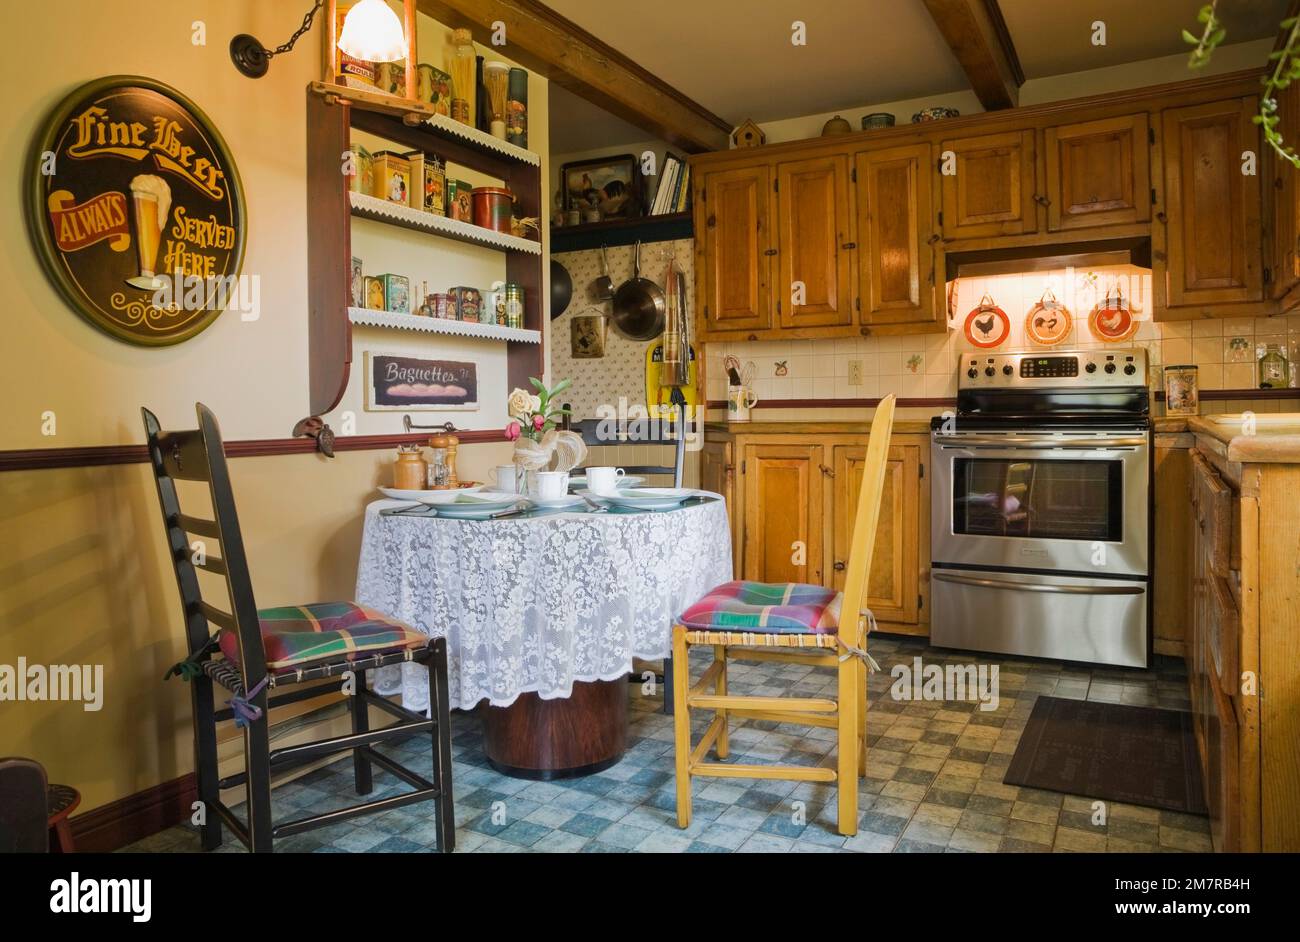 Antike Holzstühle und Frühstückstisch in der Küche im alten rekonstruierten  Blockhaus im Landhausstil aus dem Jahr 1850er, Quebec, Kanada. Dieses Bild  ist Eigenschaft rel Stockfotografie - Alamy